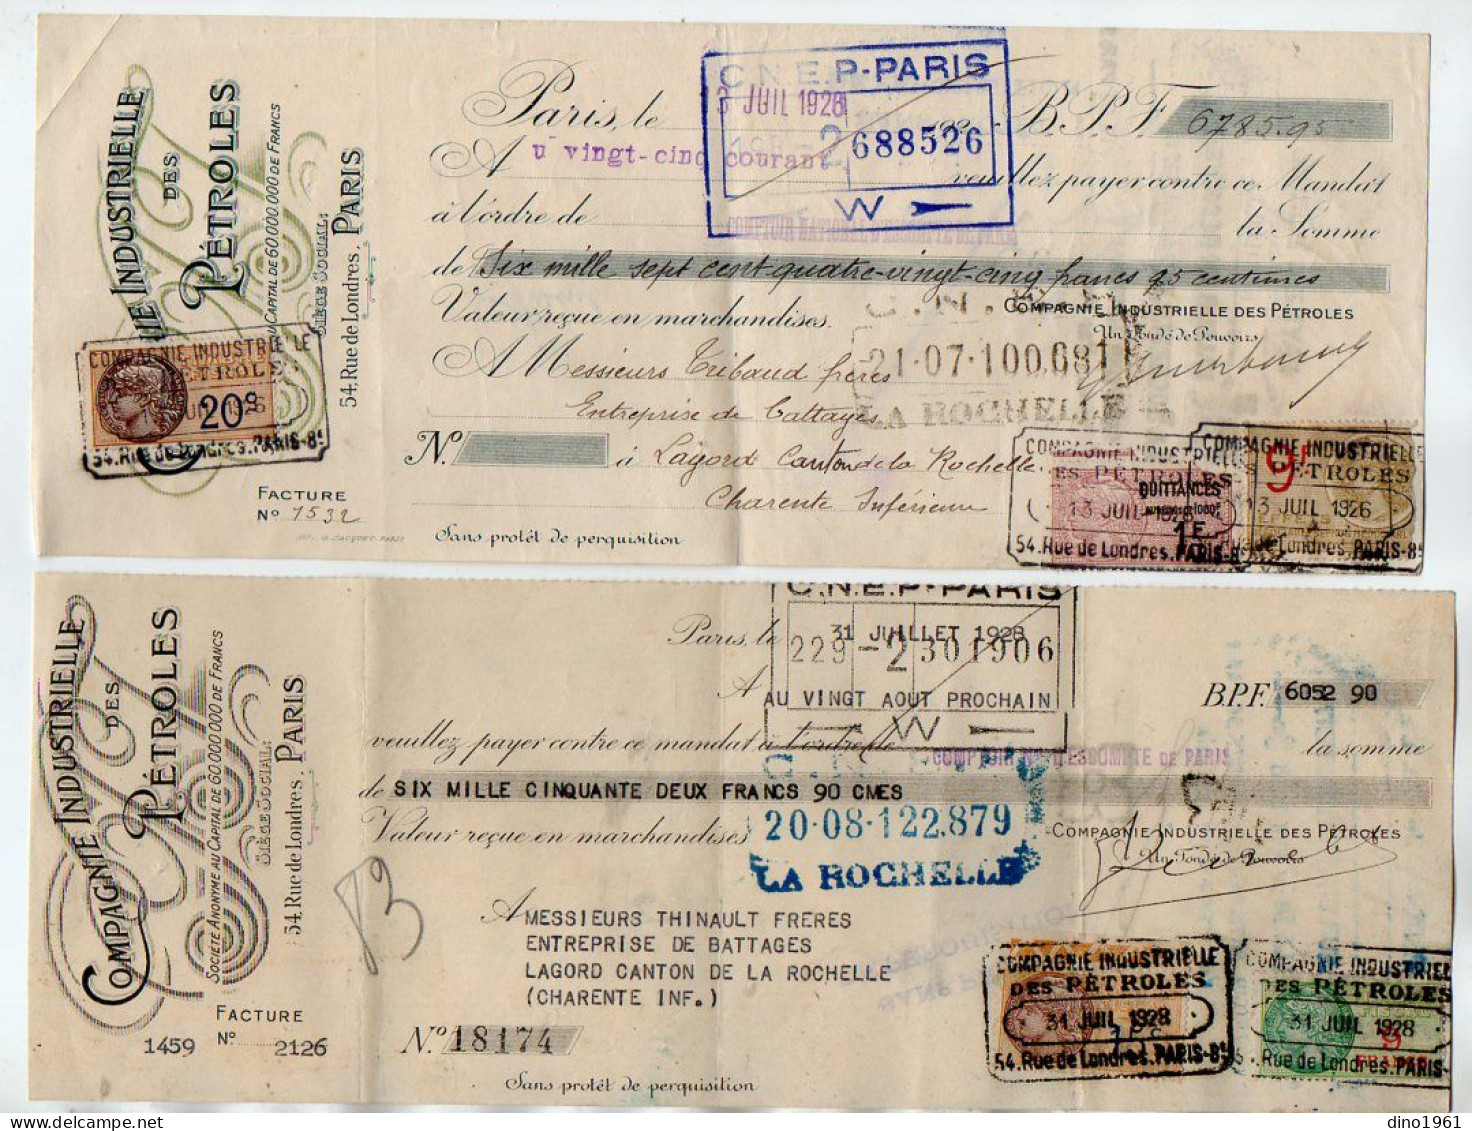 VP22.241 - 1926 / 28 - Lettre De Change - Compagnie Industrielle Des Pétroles à PARIS - Bills Of Exchange